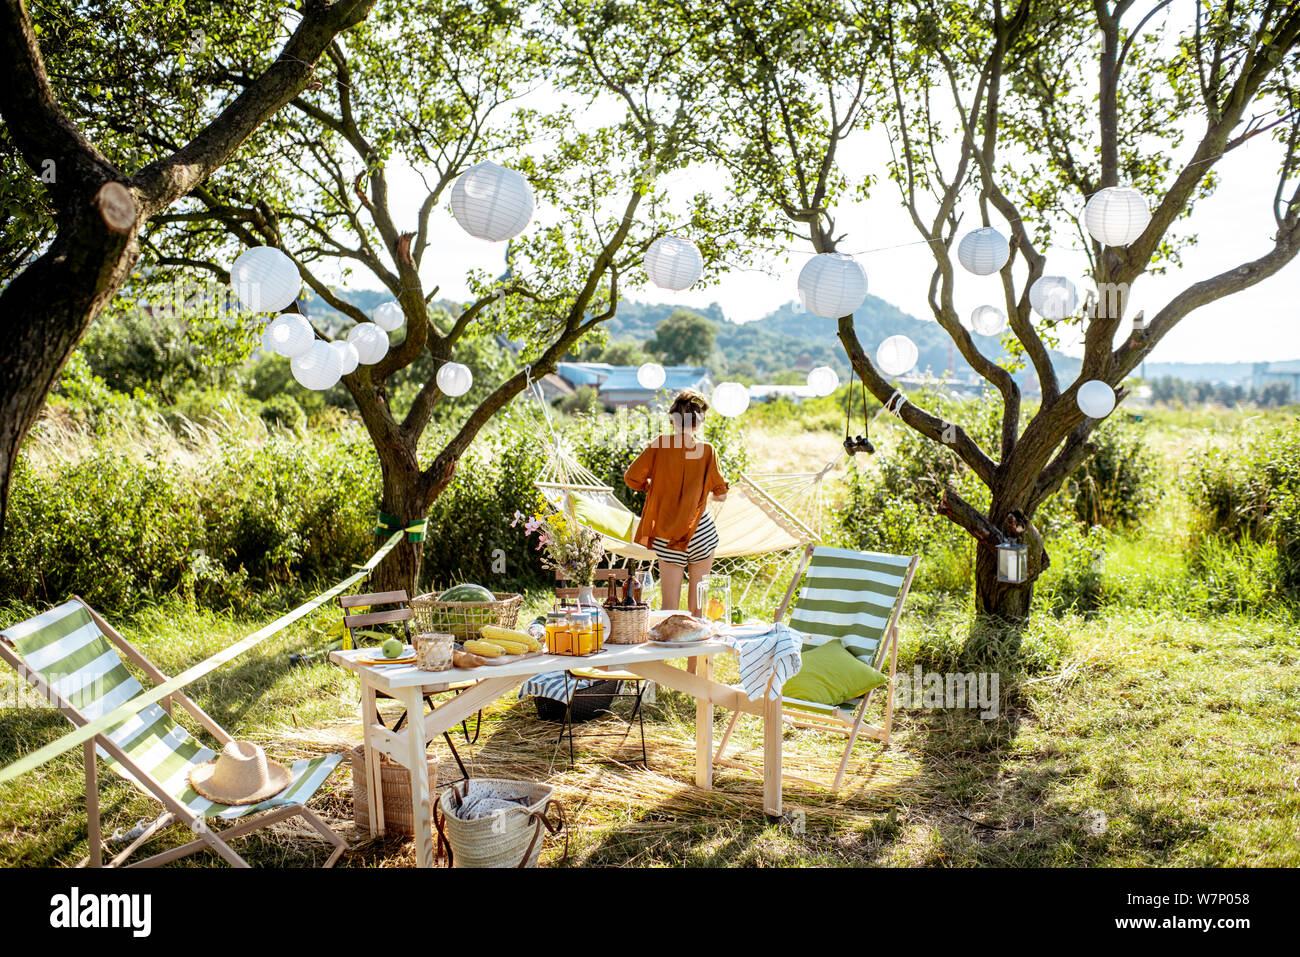 Schön Garten mit Sonnenliegen, Tisch, Hängematte und dekorative Laternen,  bereit für den festlichen Abendessen eingerichtet. Frau auf dem Hintergrund  Stockfotografie - Alamy